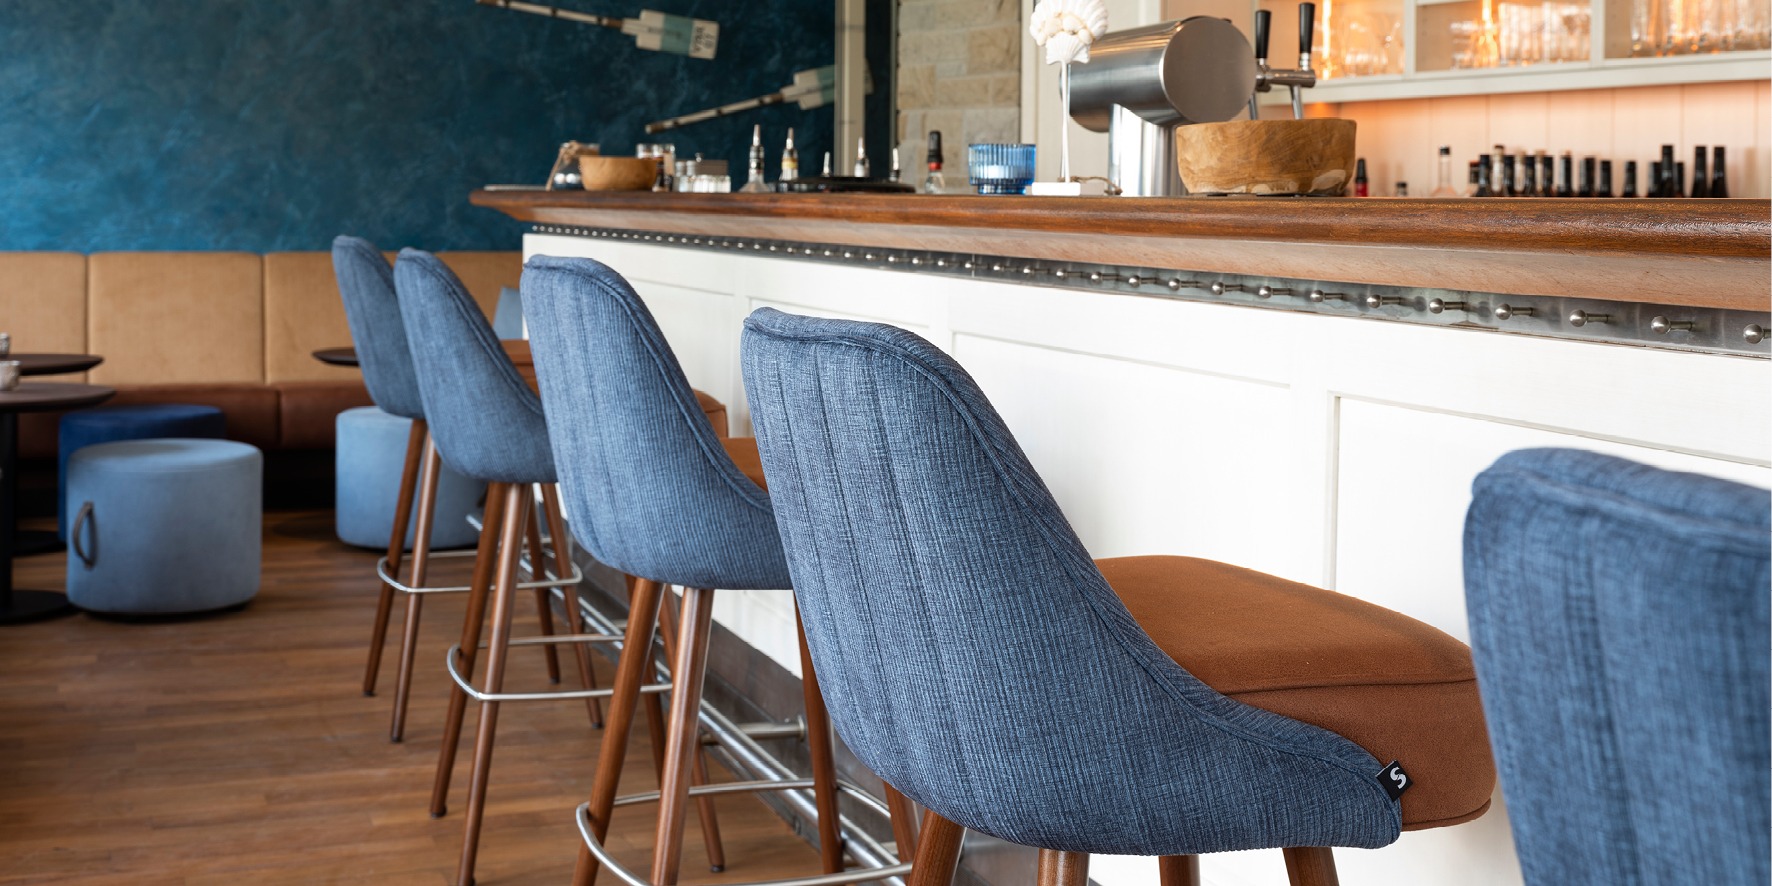 gastronomie möbel - stuhlfabrik schnieder - hocker stühle bänke tische